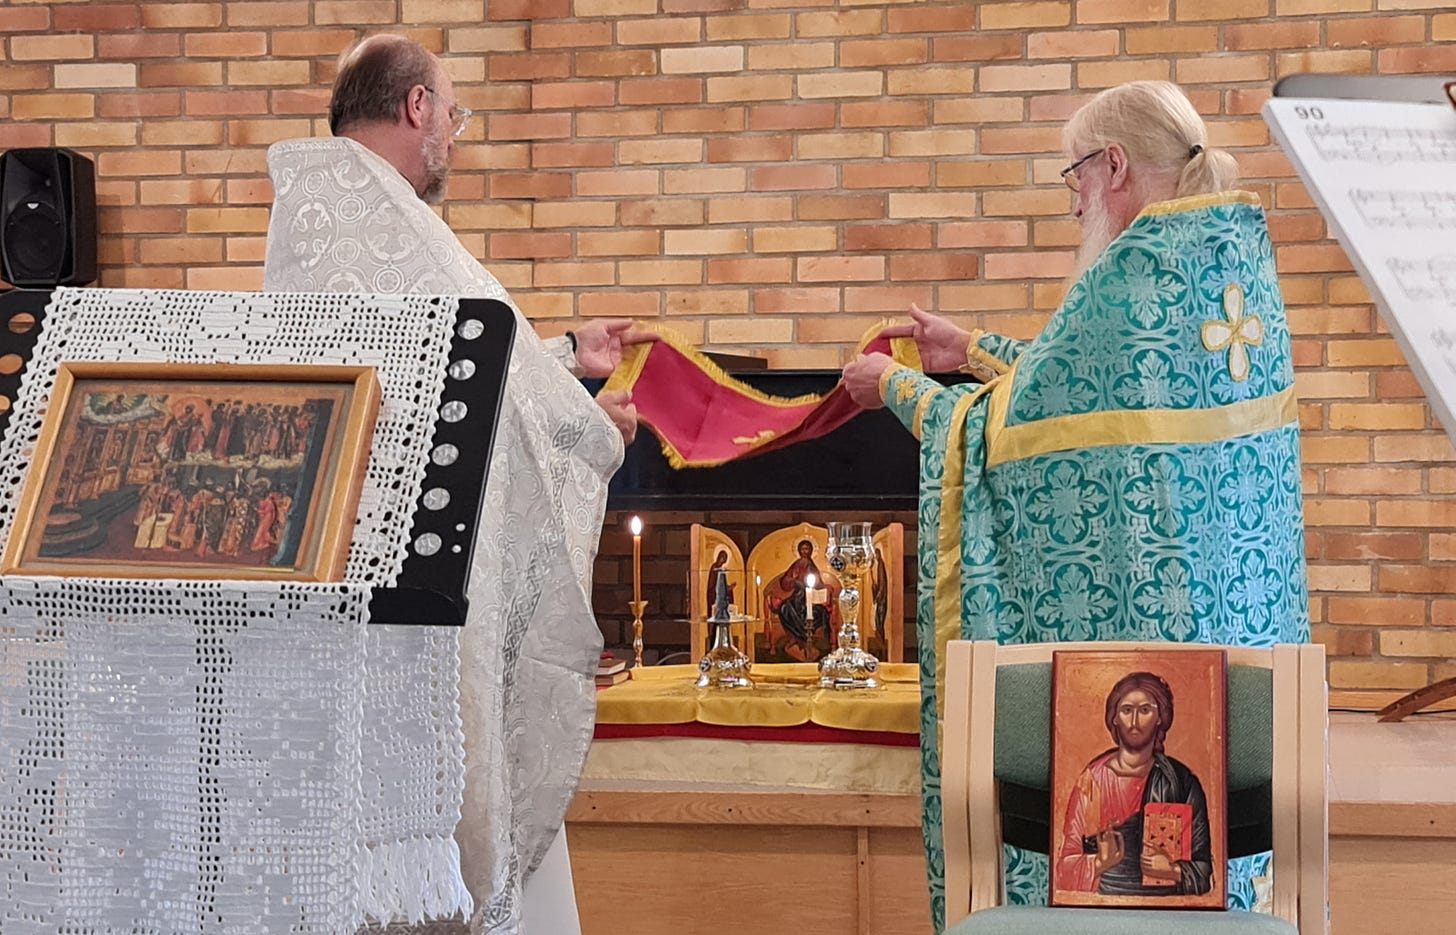 Två ortodoxa präster står vid ett altarbord och håller i en röd duk med ett kors på över de eukaristiska gårvorna. I förgrunden syns två ikoner, den ena framställd på ett notställ och den andra på en stol.